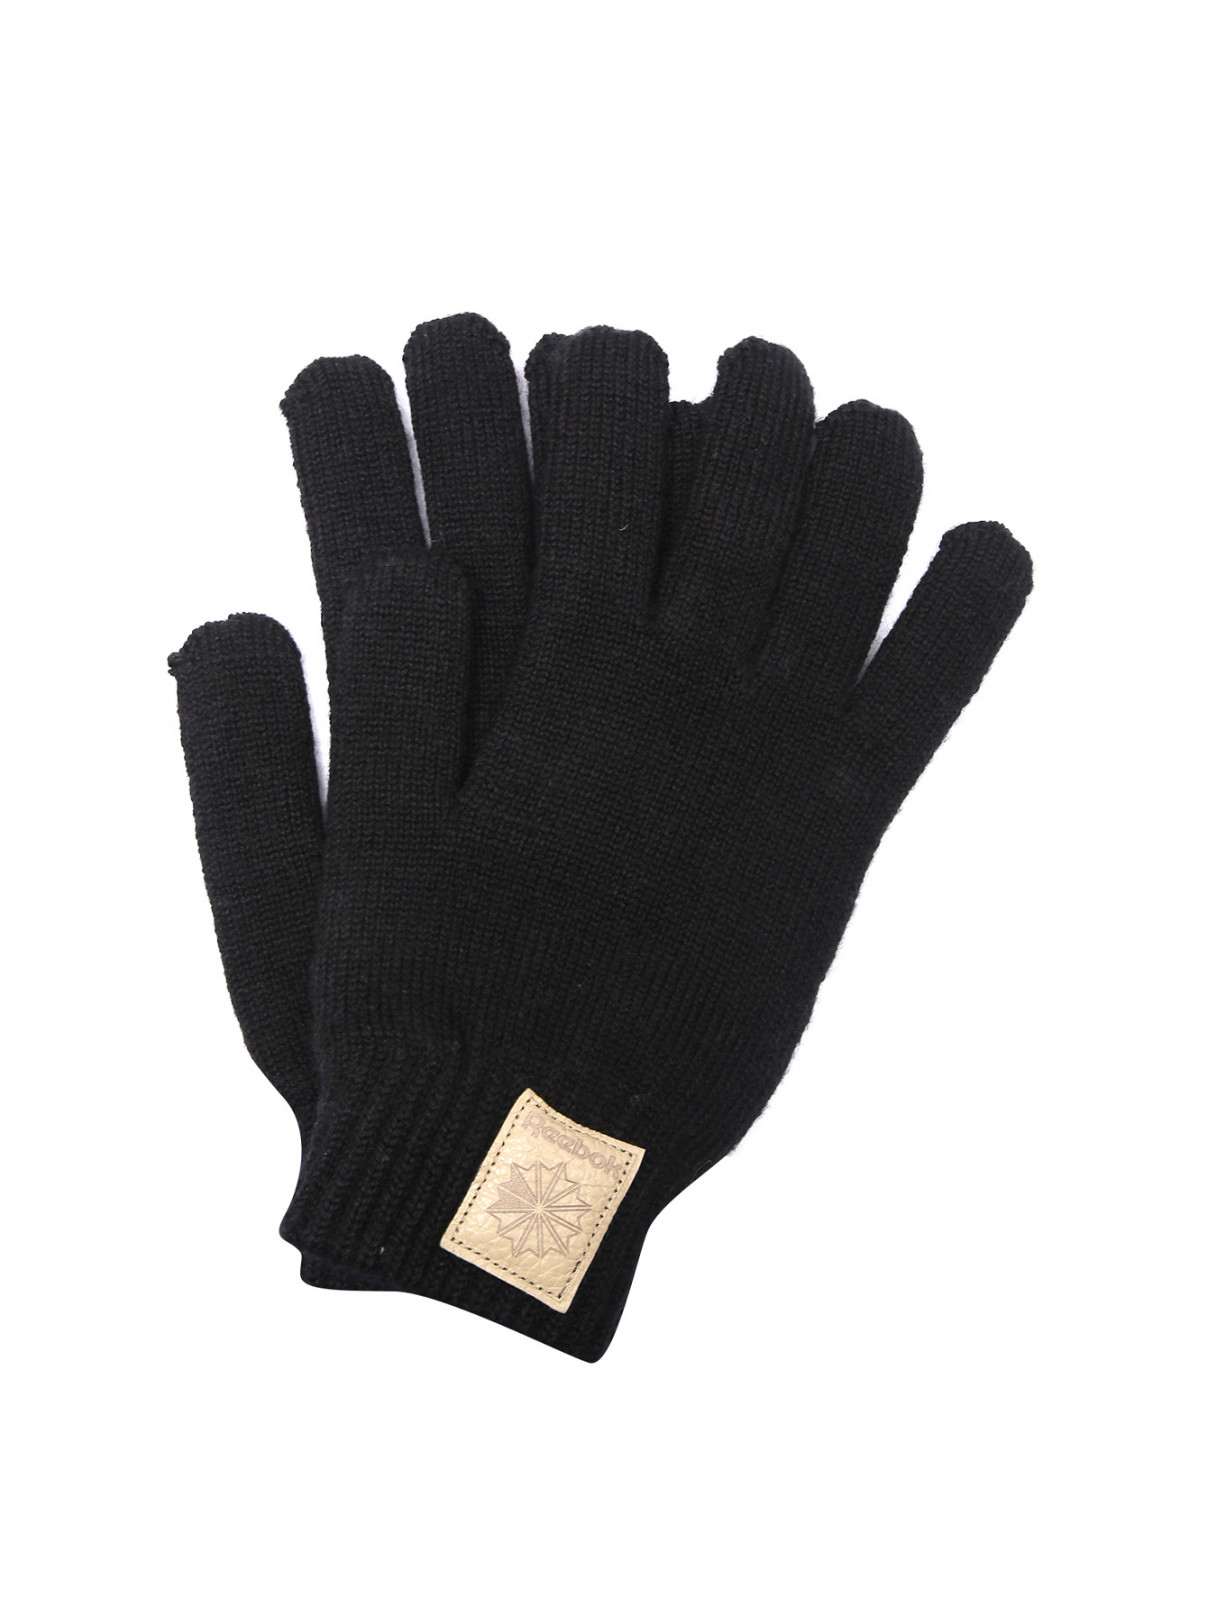 Перчатки из смешанной шерсти с логотипом Reebok Classic  –  Общий вид  – Цвет:  Черный